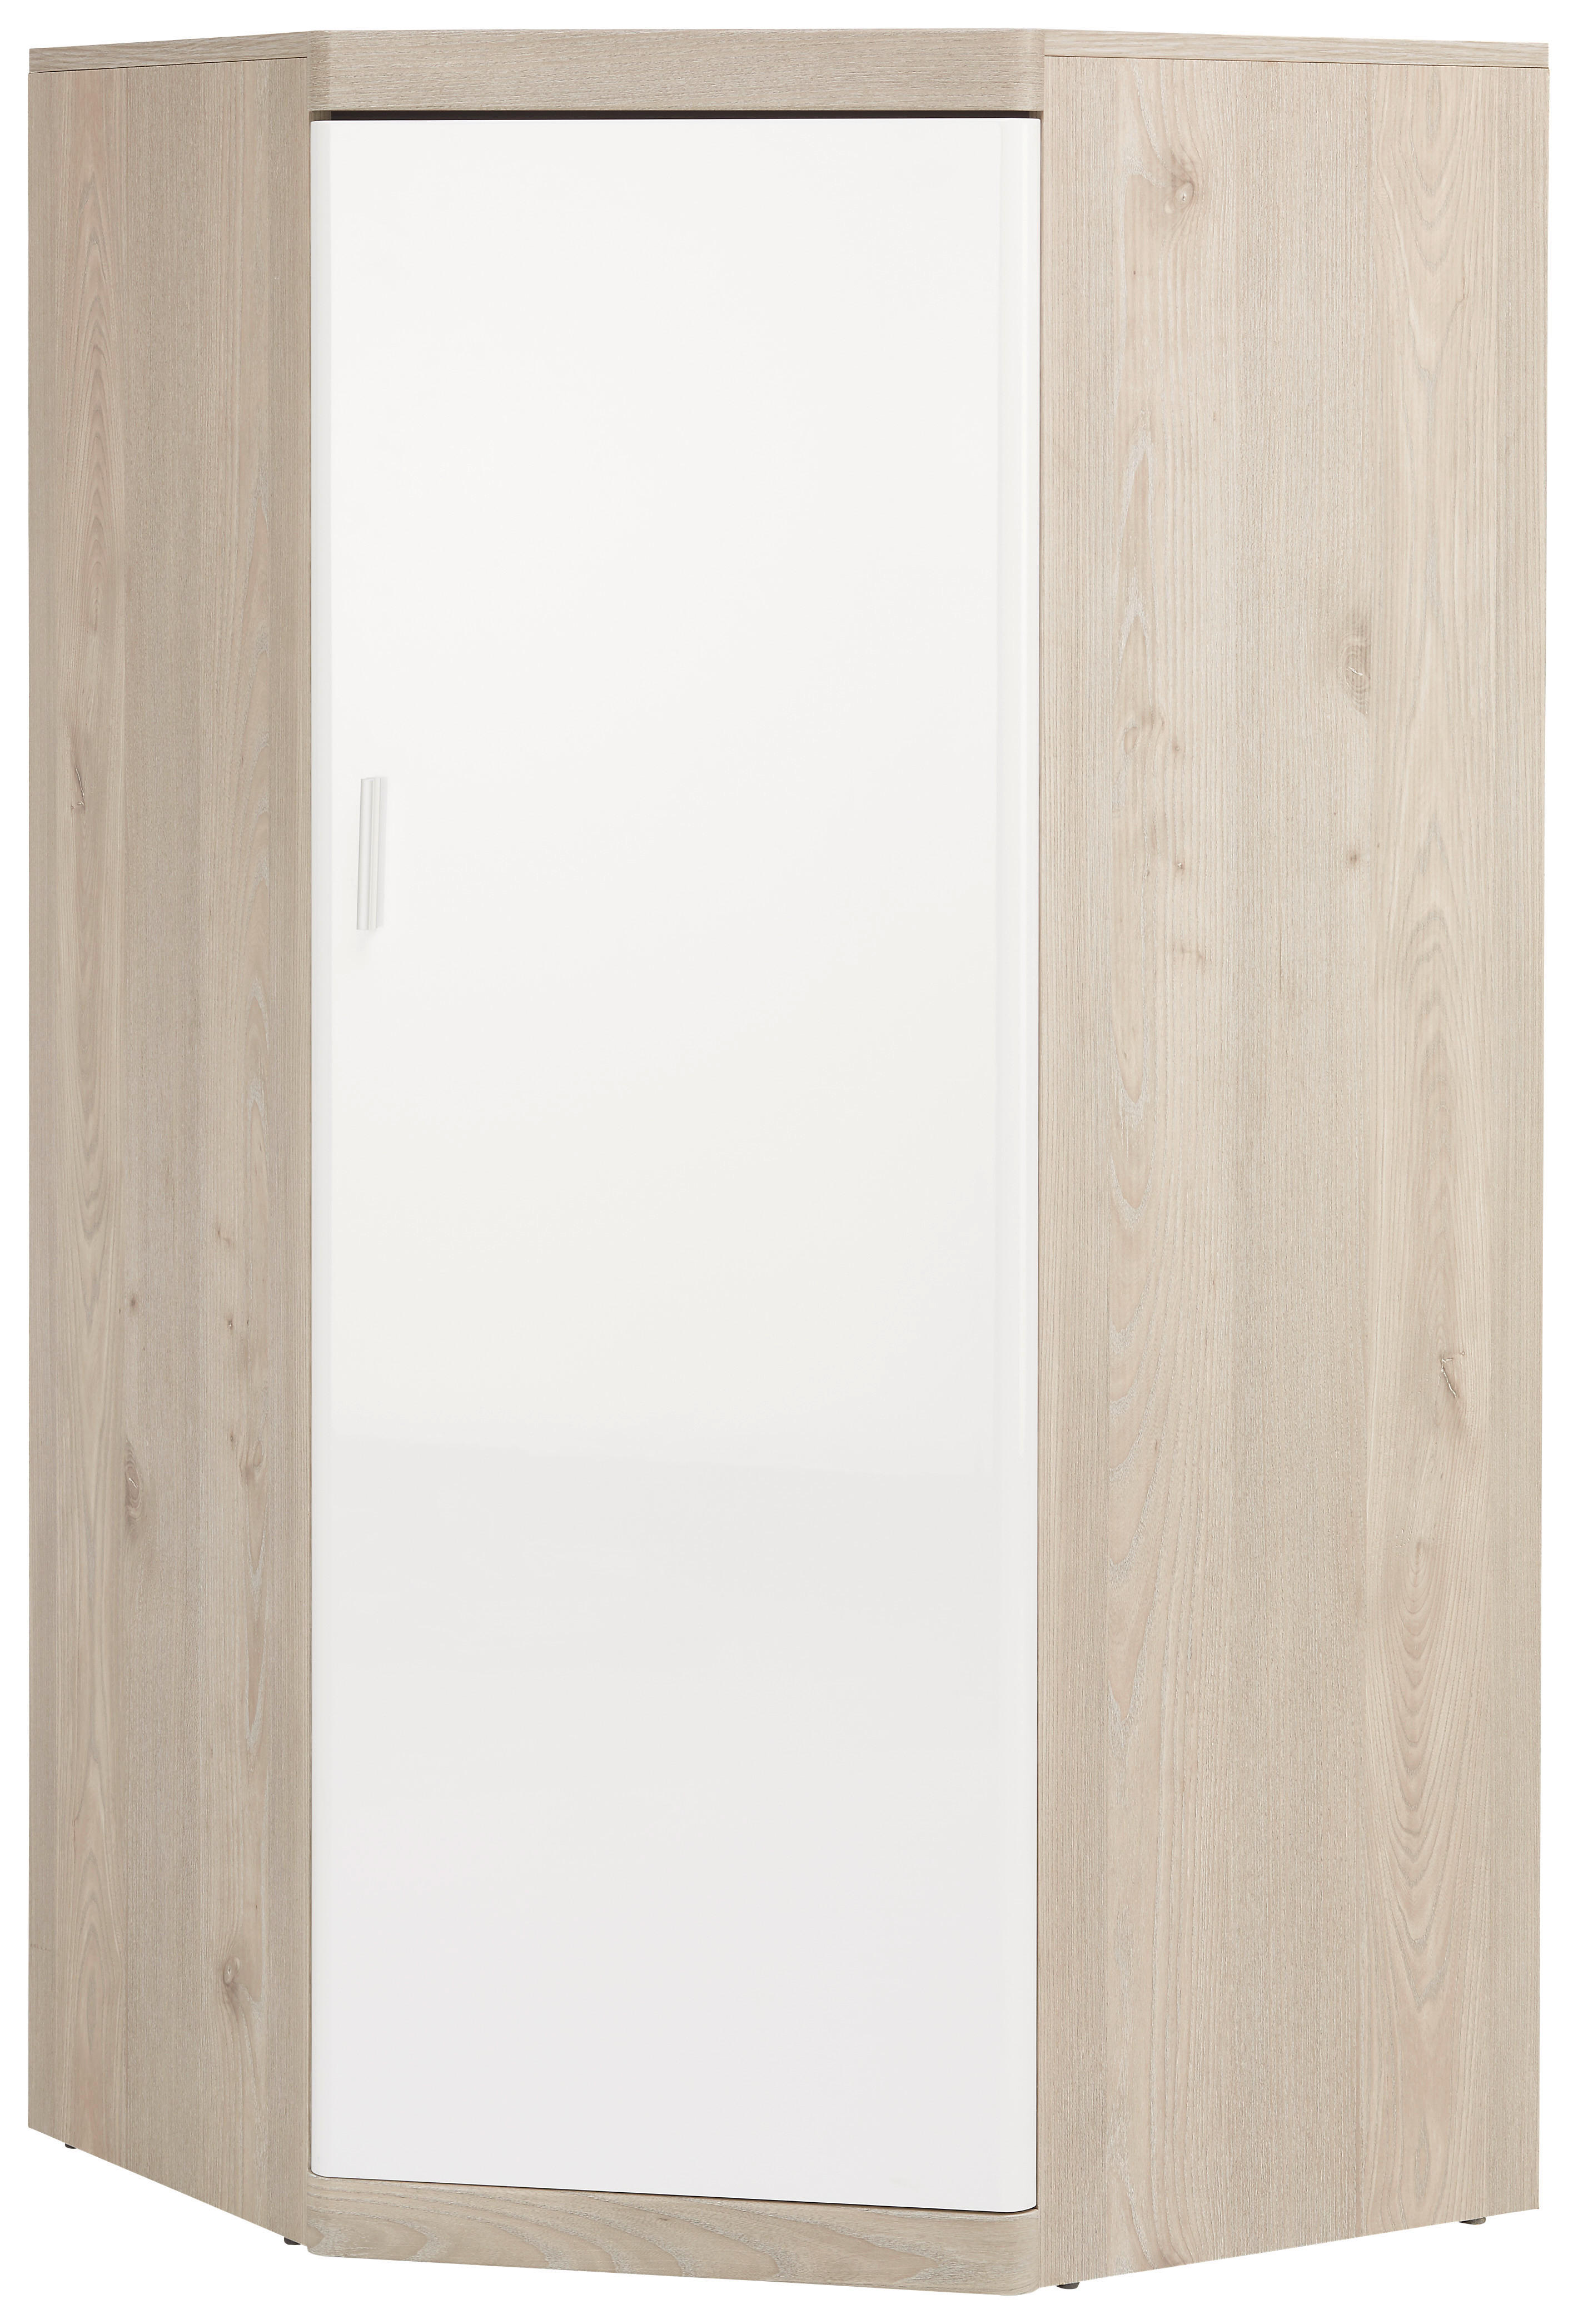 Xora ROHOVÁ SKŘÍŇ, bílá, barvy dubu, 73/139/73 cm - bílá,barvy dubu - kompozitní dřevo